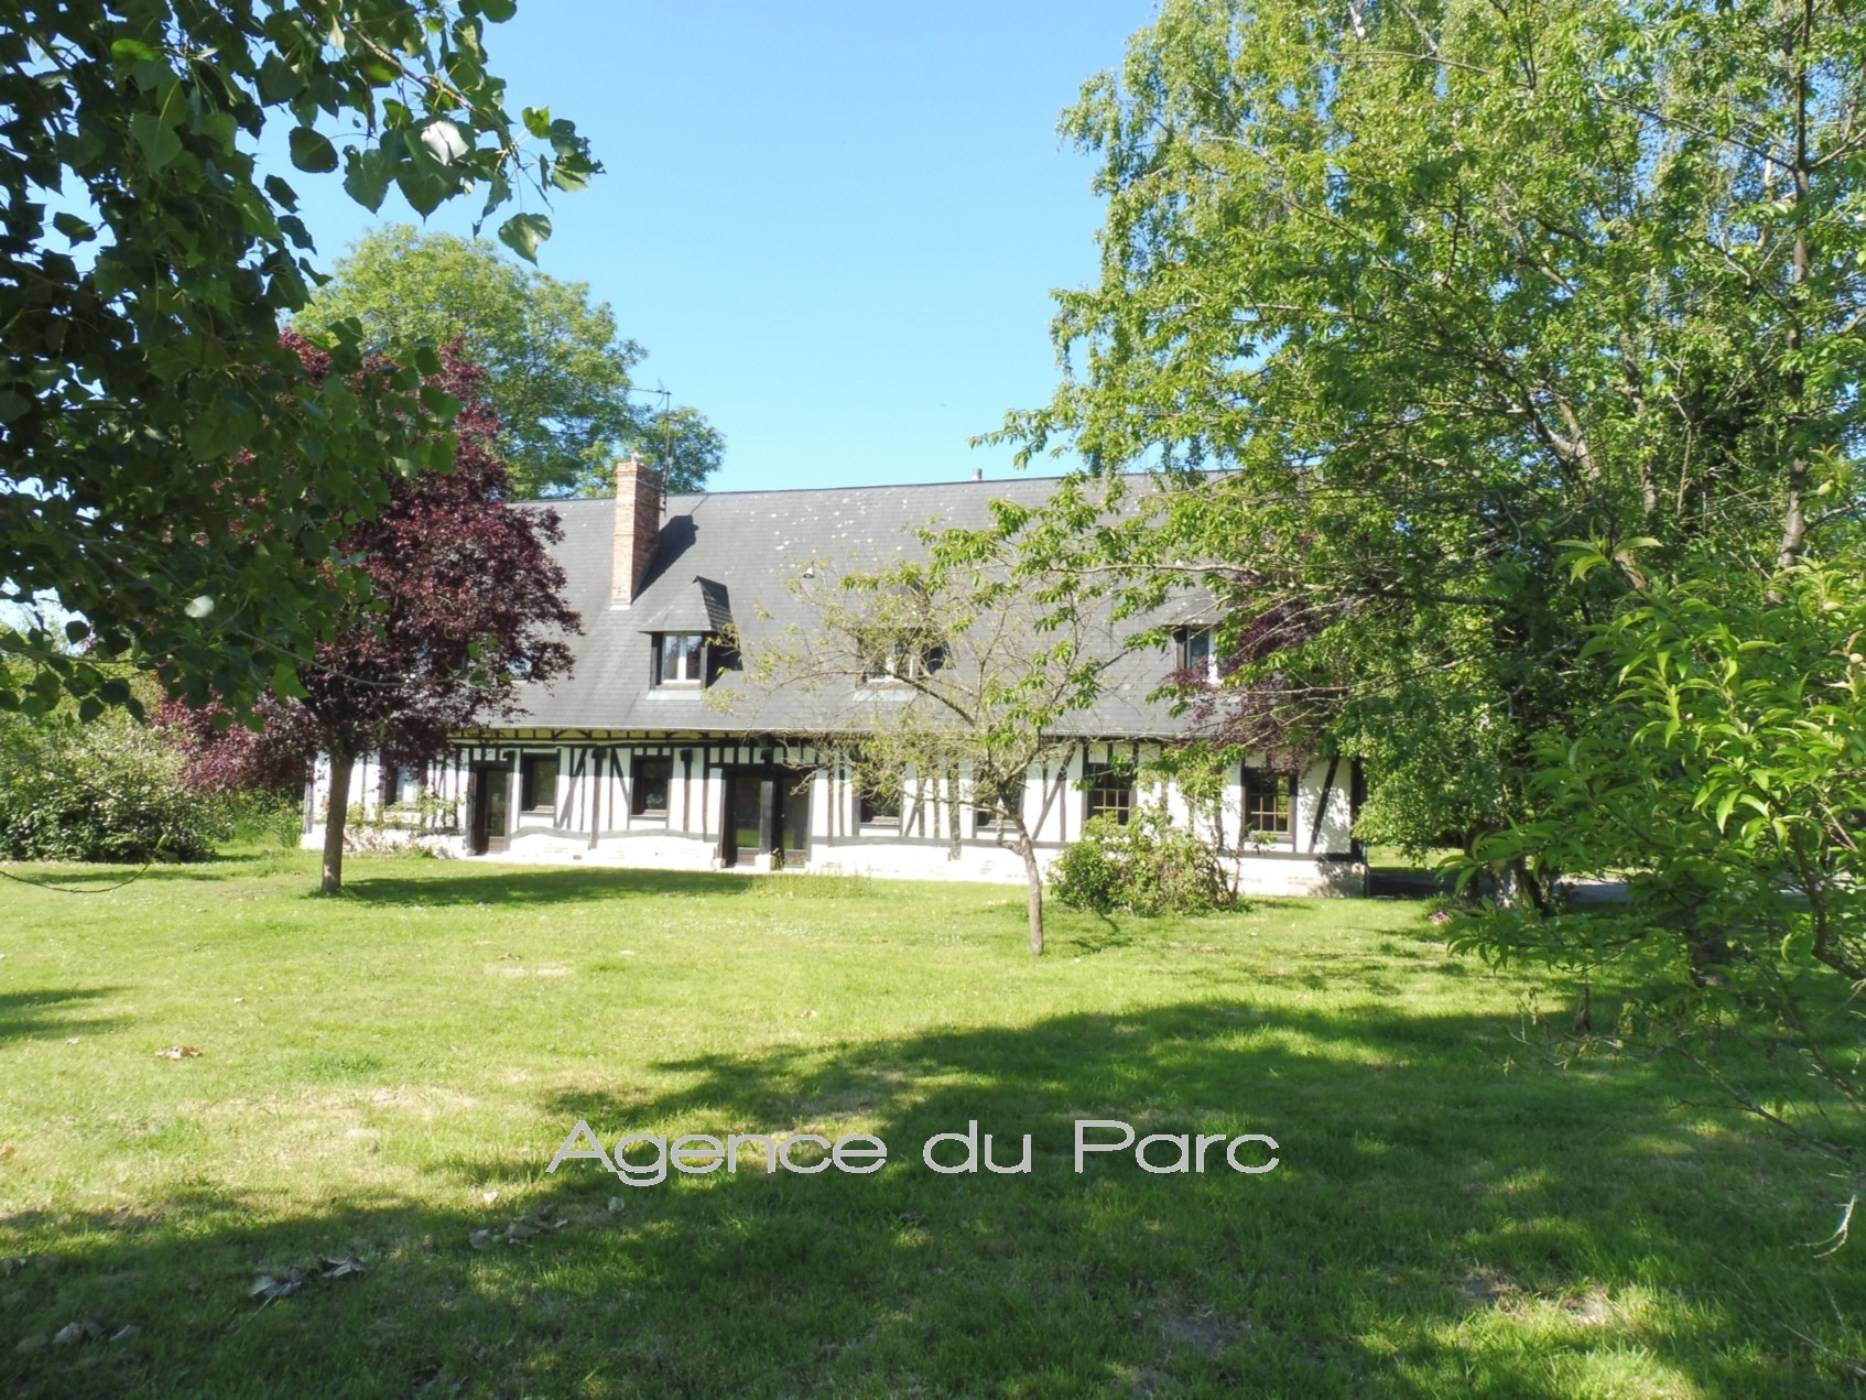 Maison normande à vendre, en bon état, au calme, proche de la forêt de Brotonne, entre Caudebec et Bourg Achard, Vallée de Seine